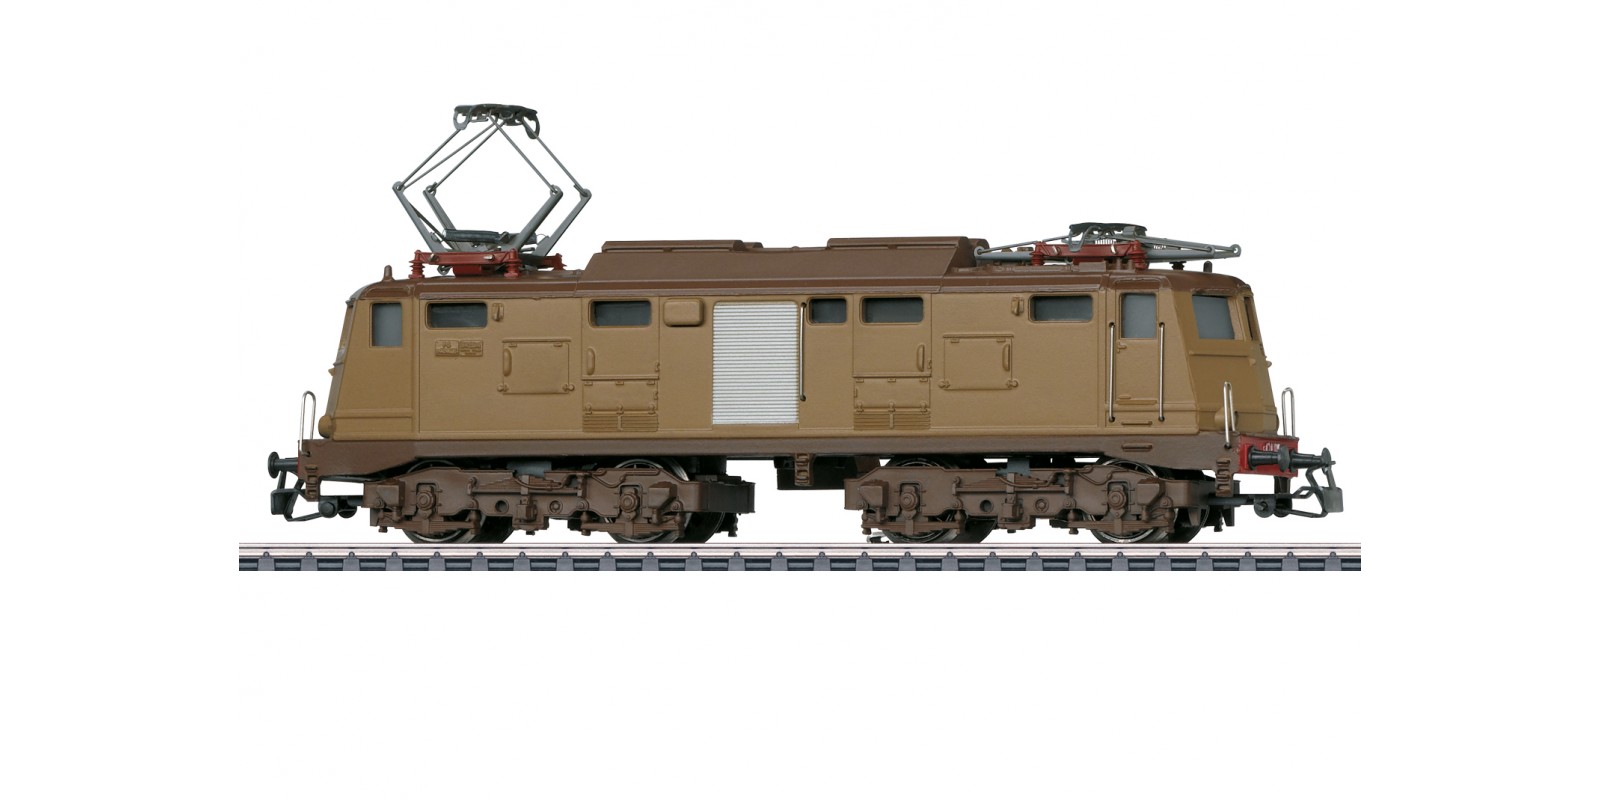 30350 Class E 424 Electric Locomotive